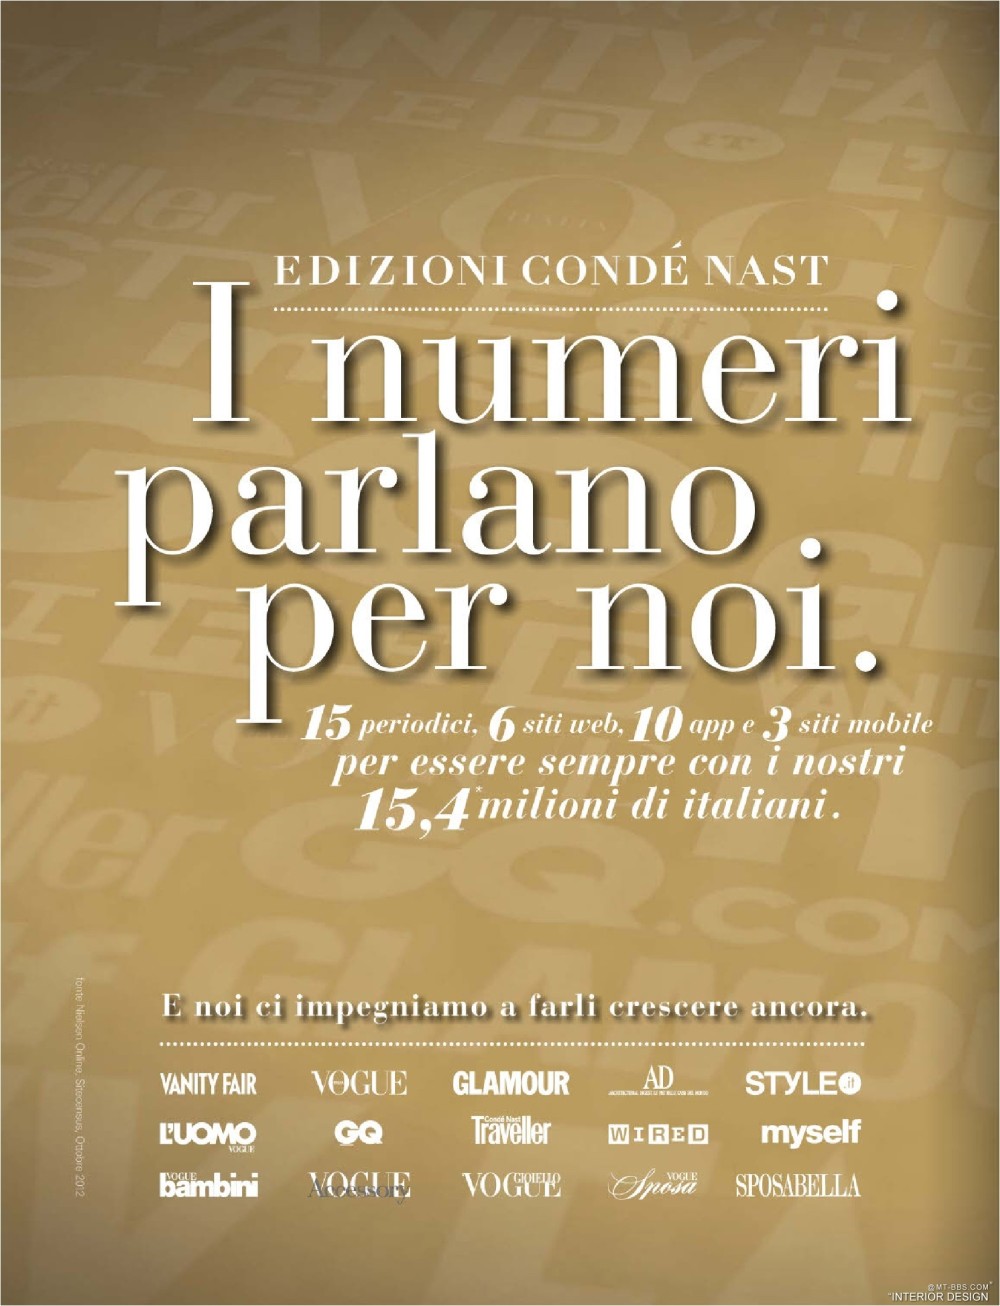 意大利AD 杂志 2012年全年JPG高清版本 全免（上传完毕）_0018.jpg